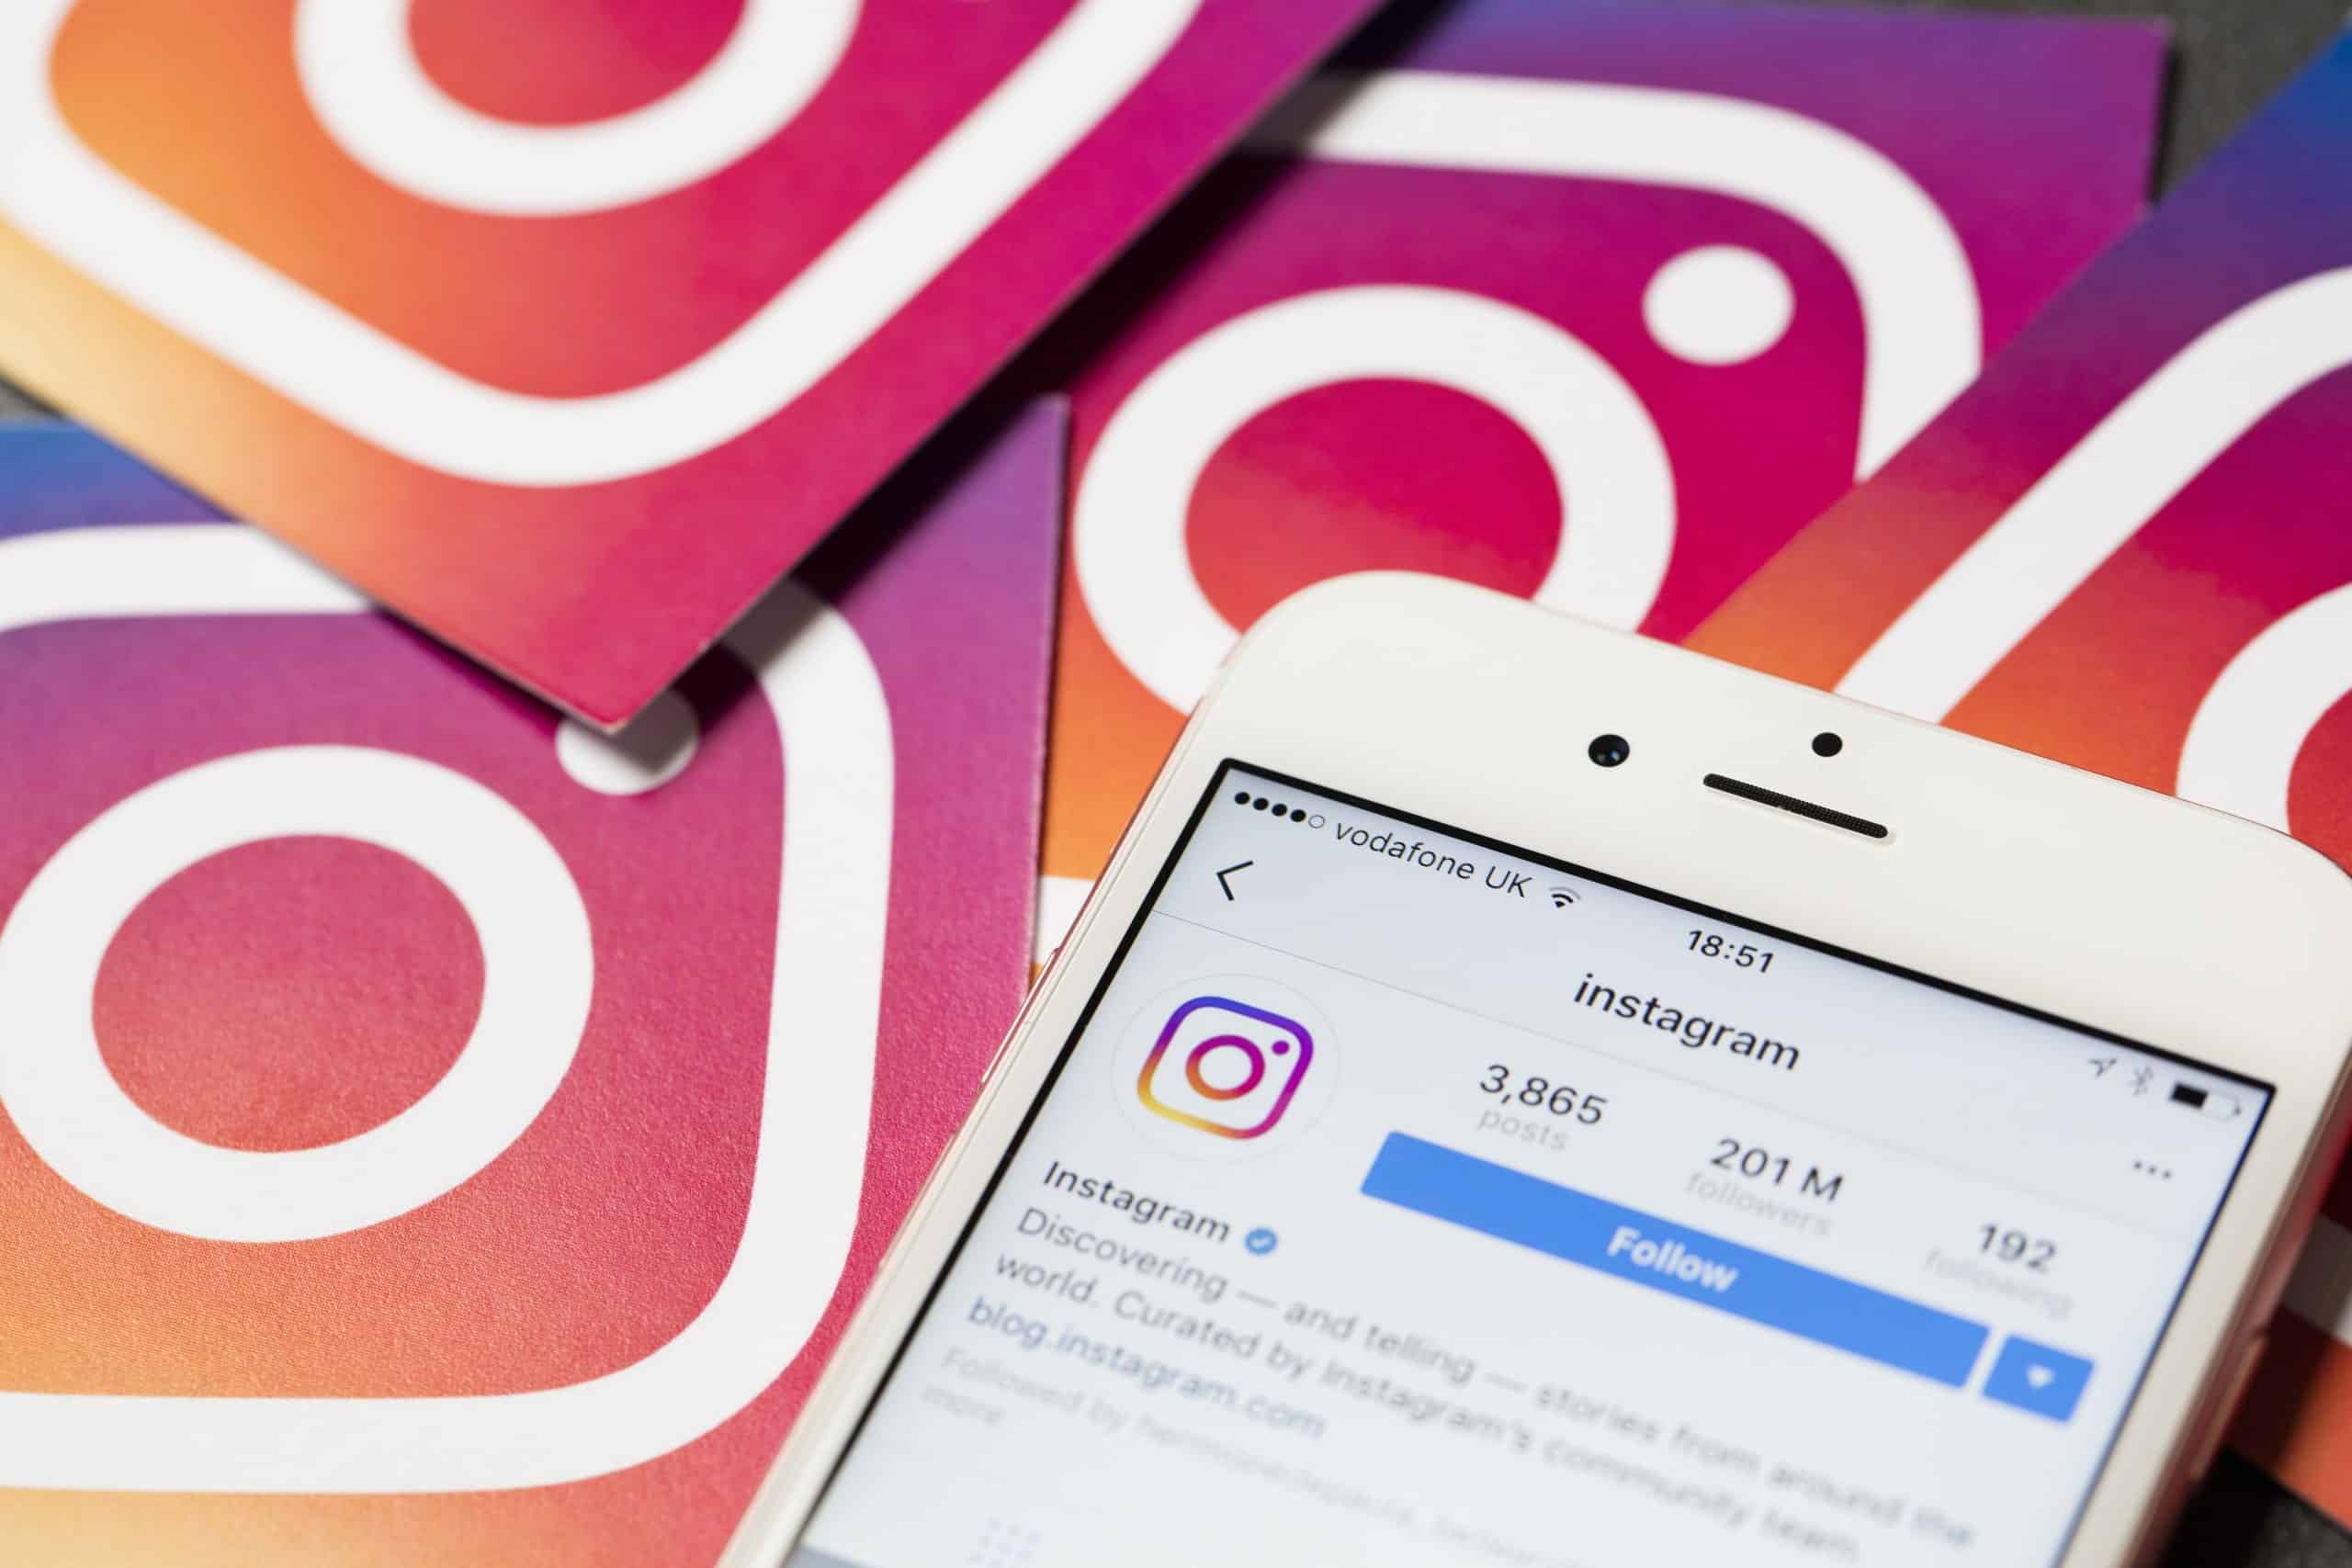 Descubra como usar o Instagram Comercial para alavancar sua marca. Aprenda estratégias de engajamento, campanhas publicitárias e análise de métricas.